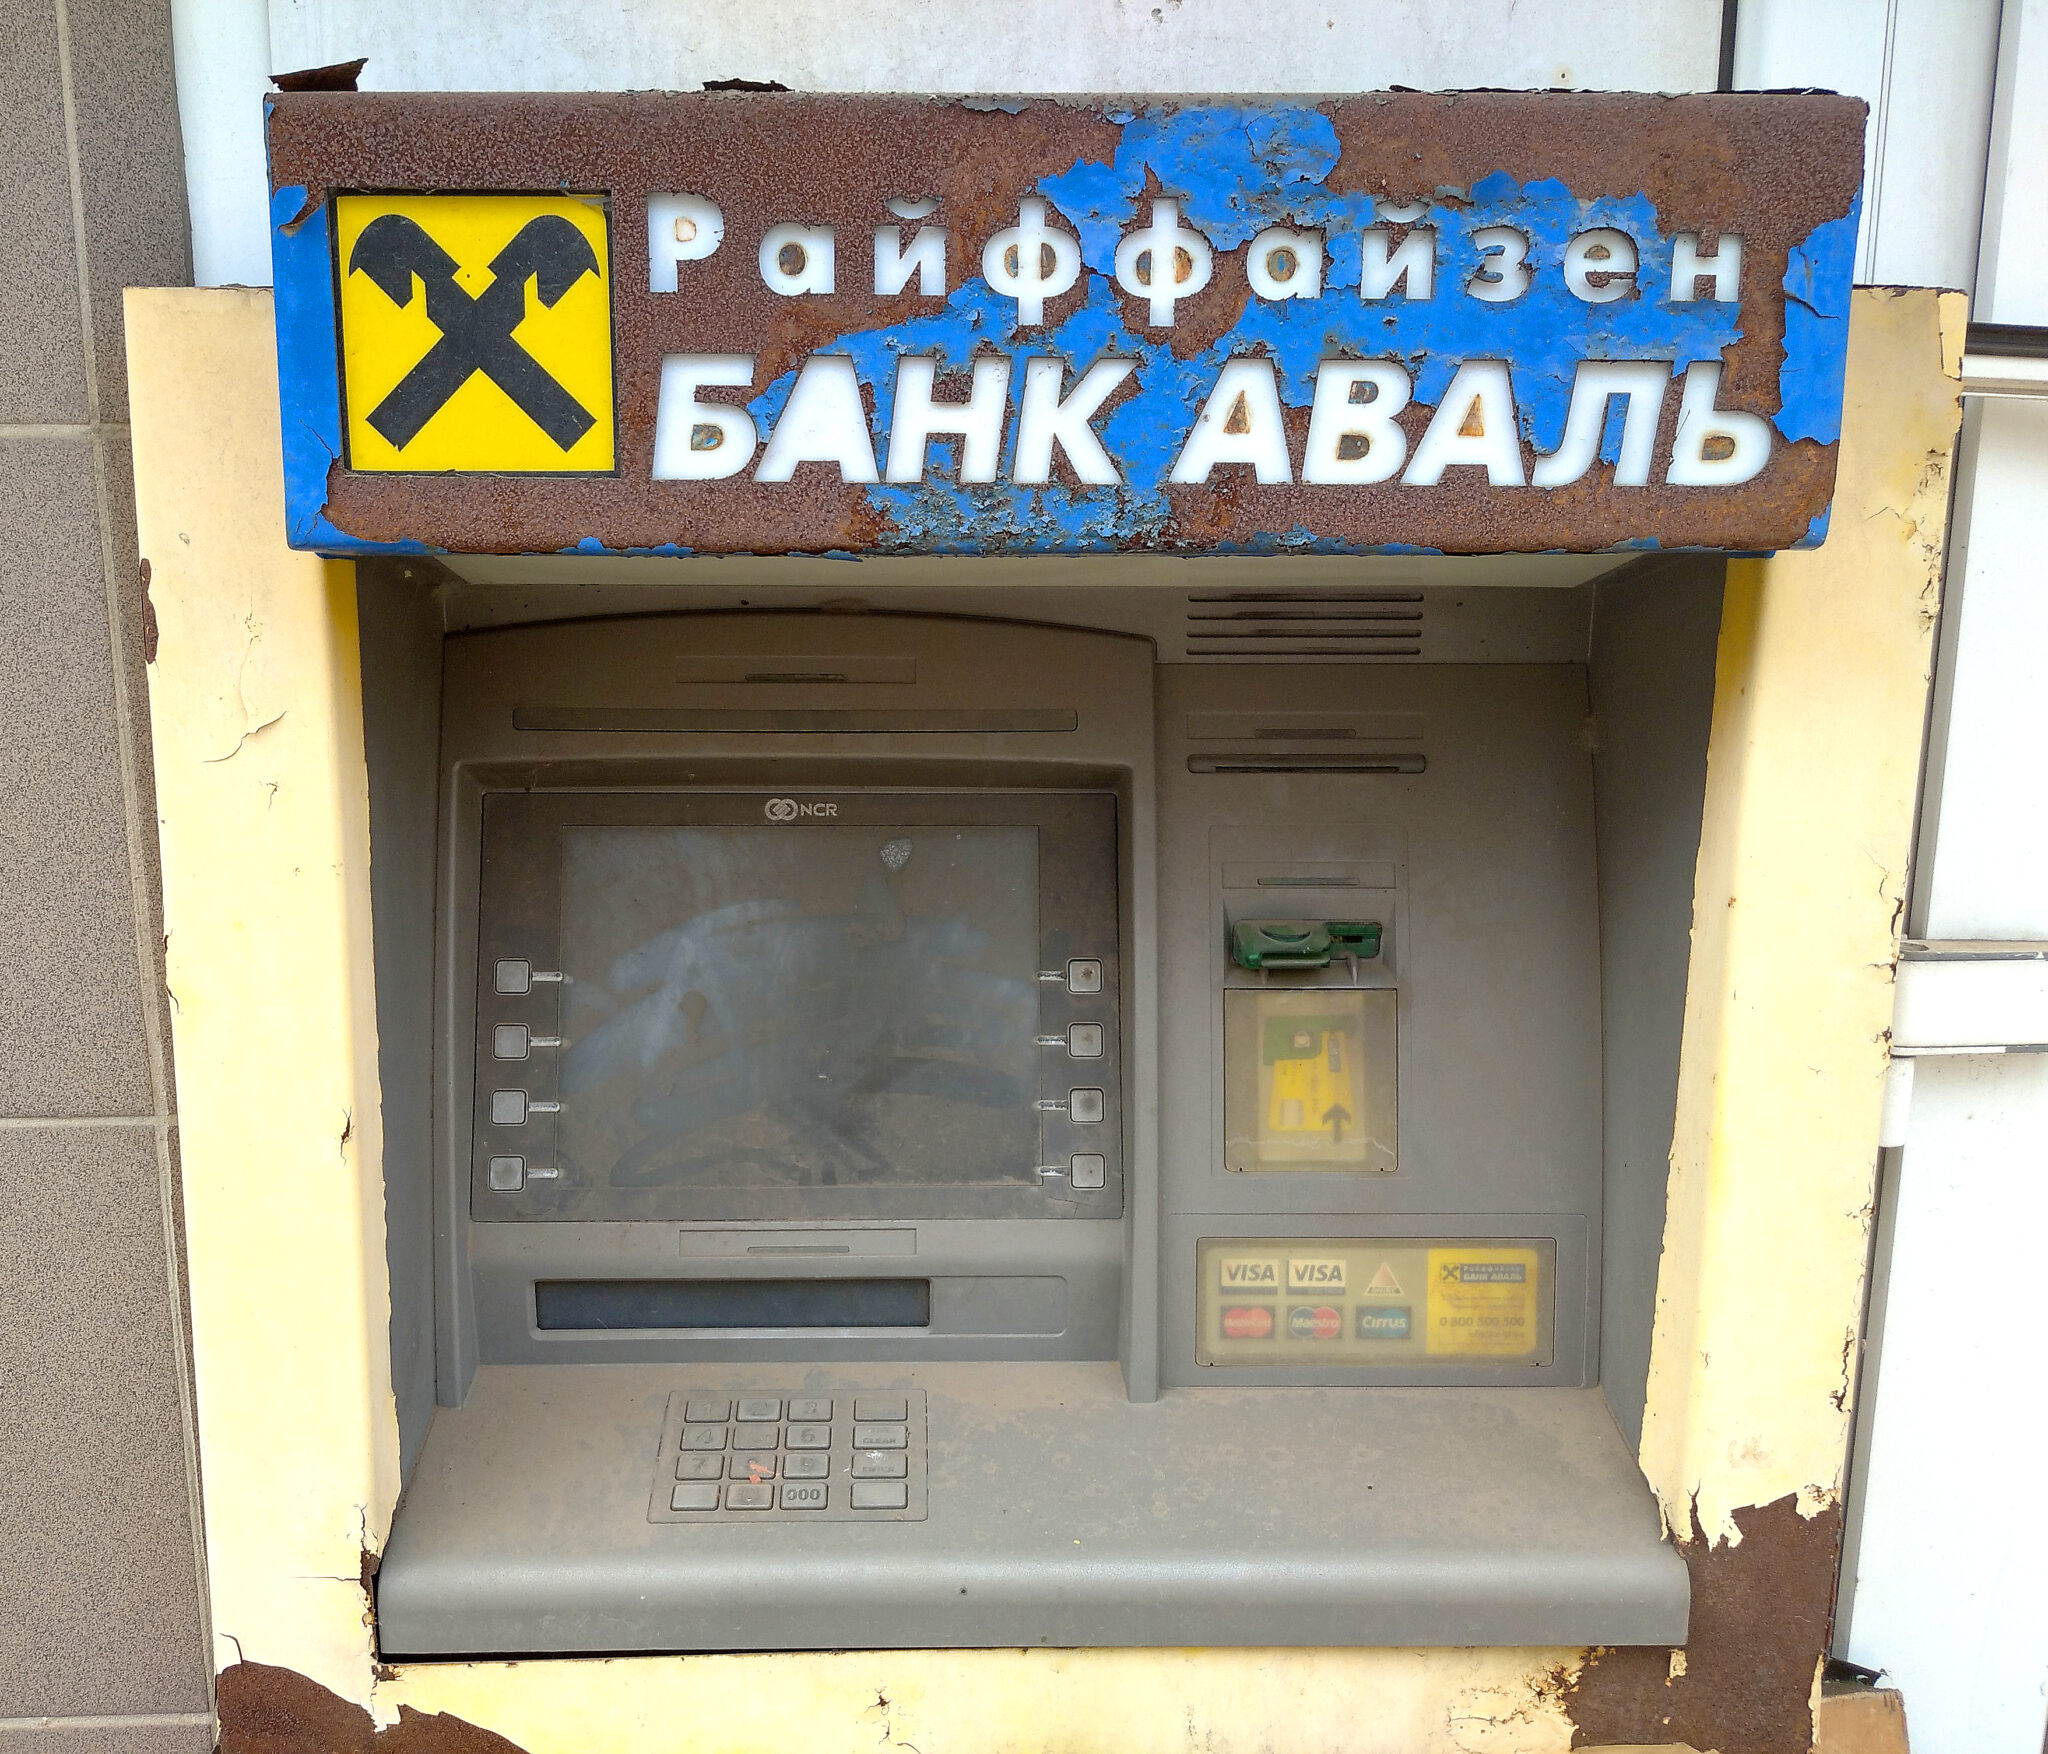 Обслуживание банкоматов украинских банков полностью прекратилось к осени 2014 года. Спустя семь лет банкомат украинского банка с иностранным капиталом "Райффайзен Банк  Аваль" выглядит так. Фото Spektr.Press